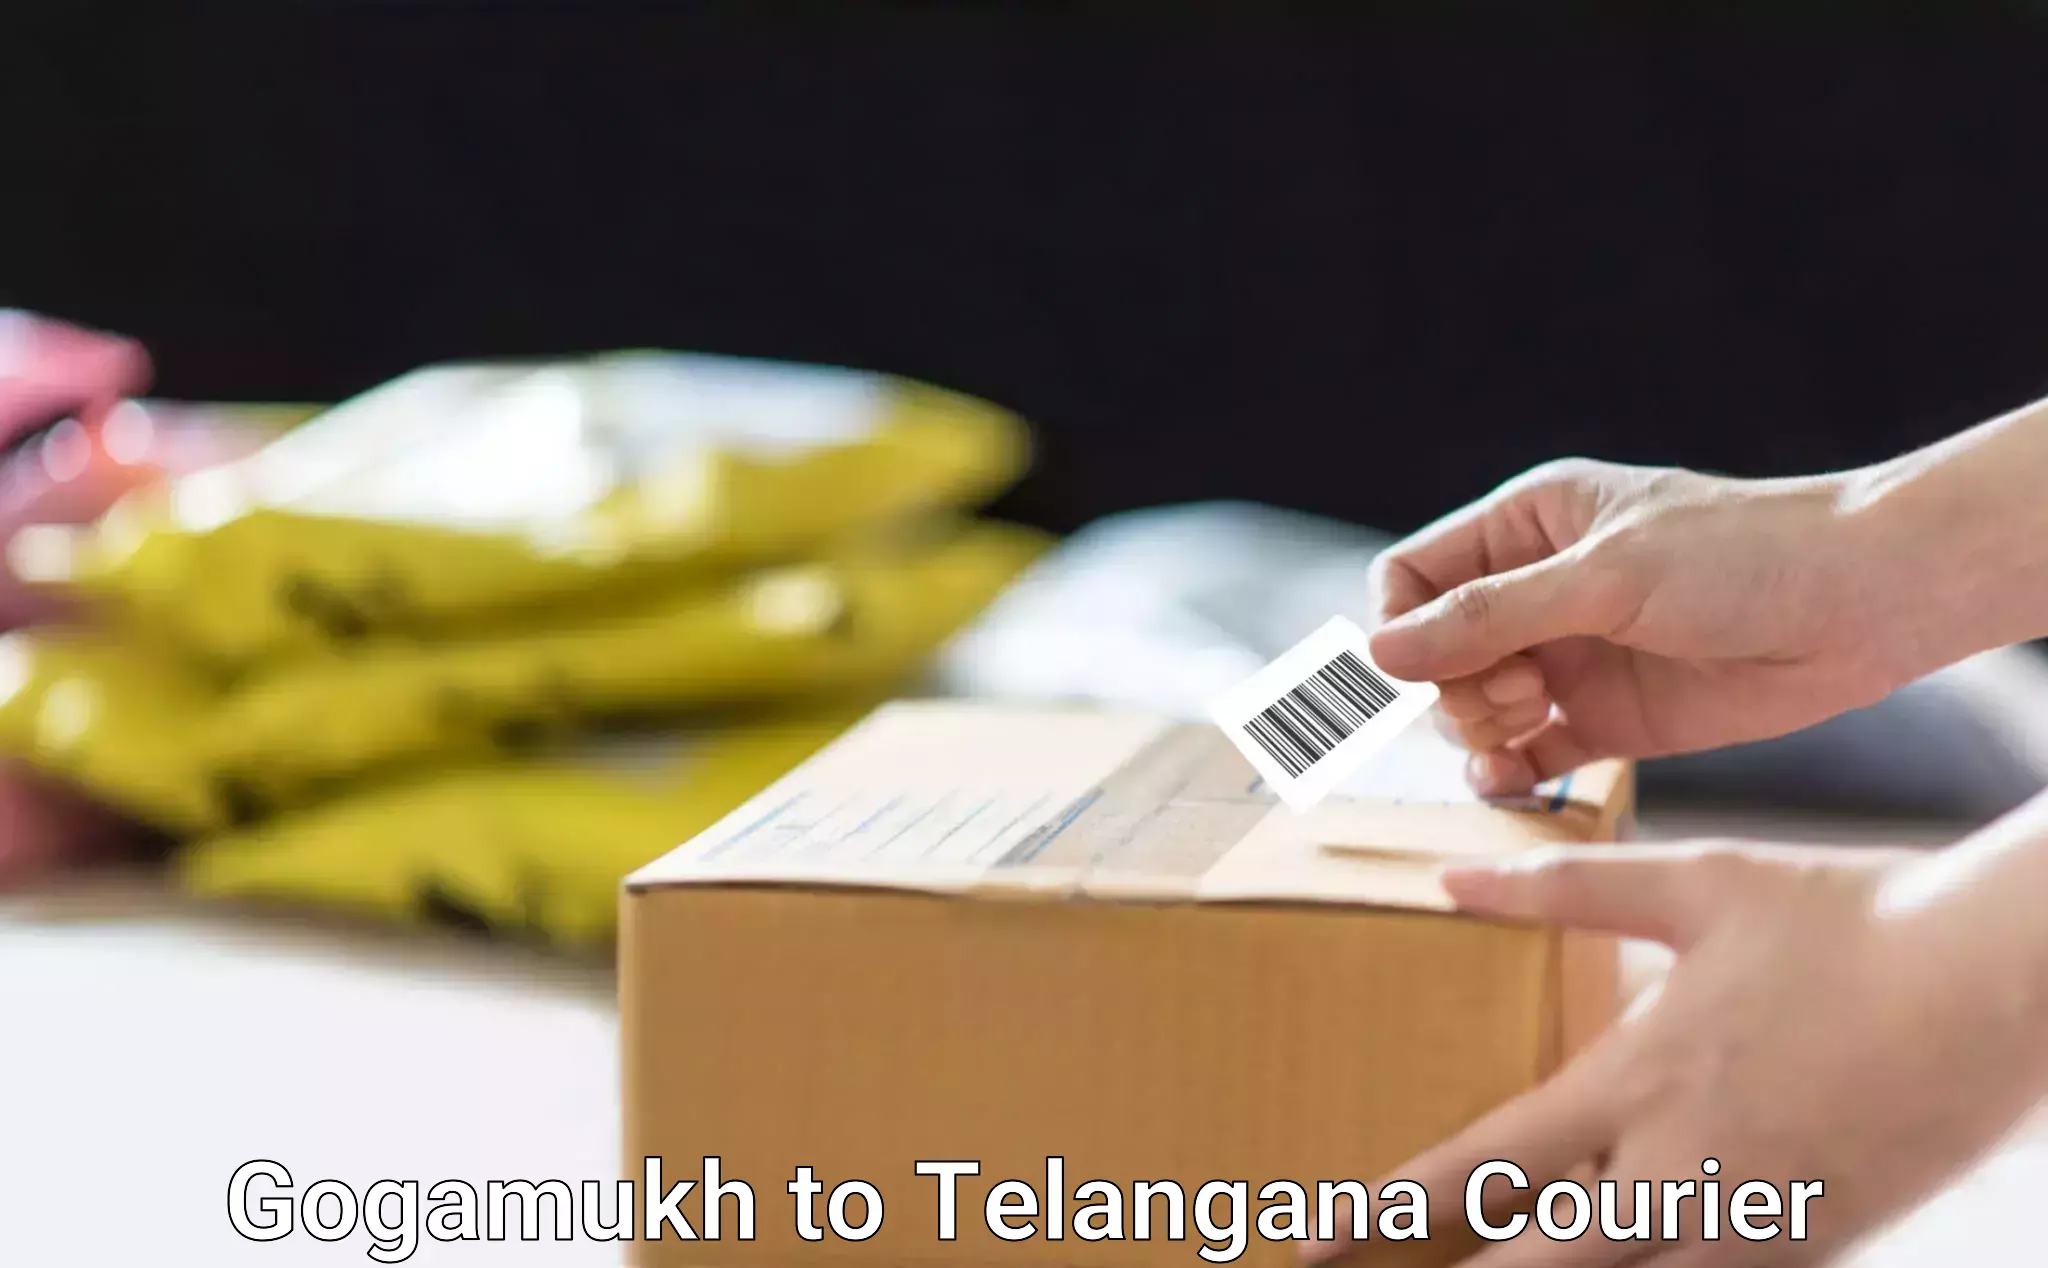 Courier service partnerships Gogamukh to Nirmal